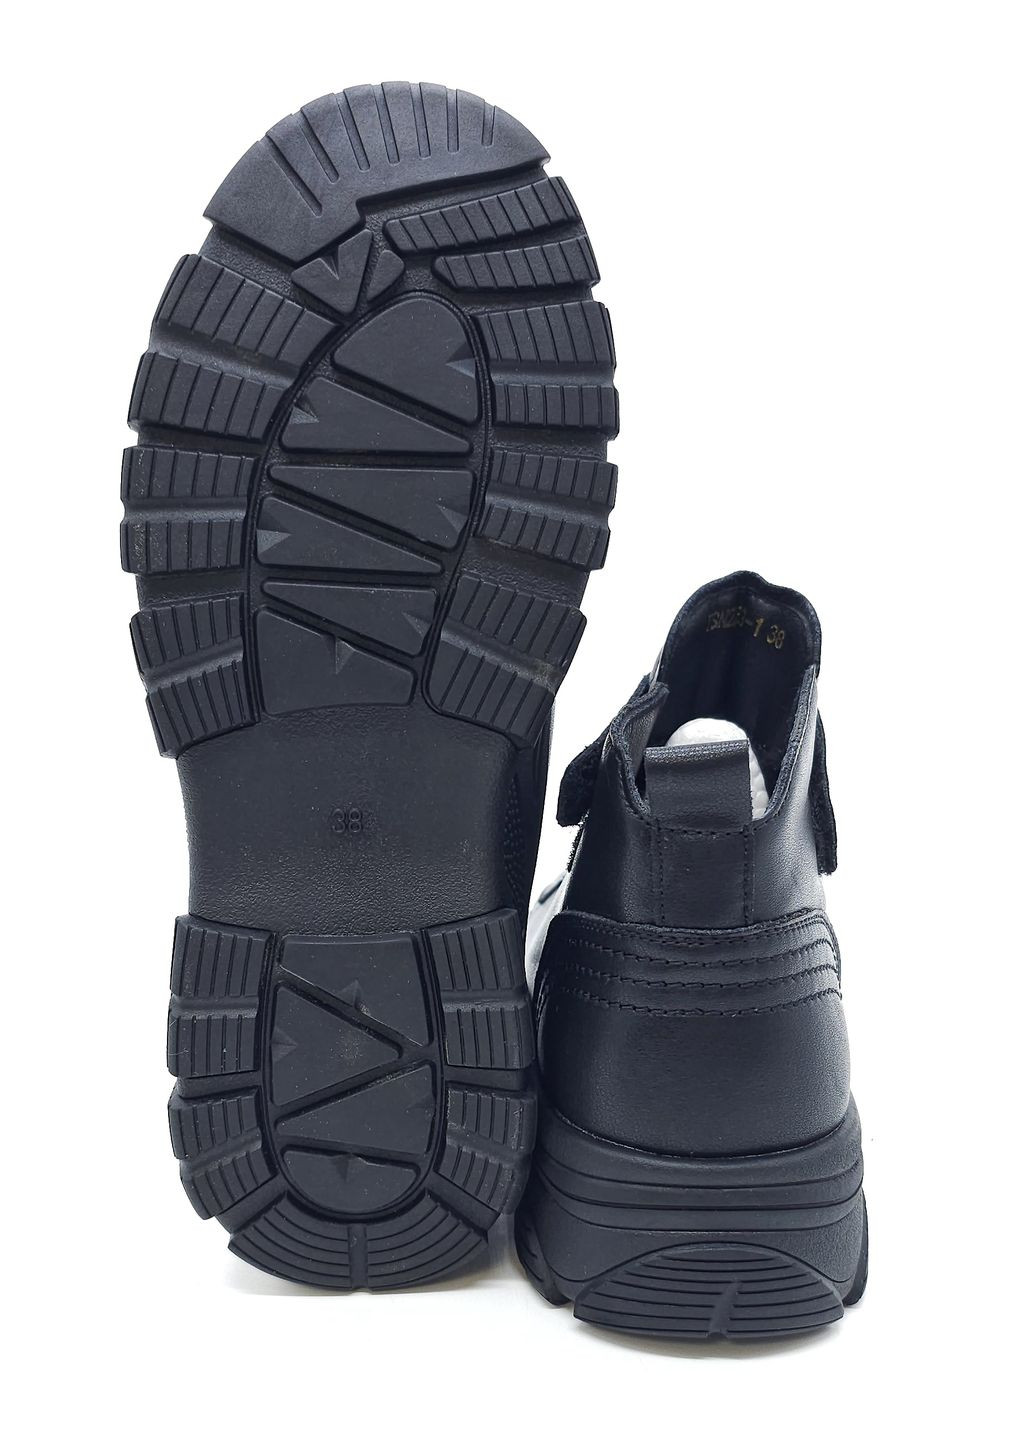 Черные женские кеды черные кожаные ya-11-20 23,5 см (р) Yalasou